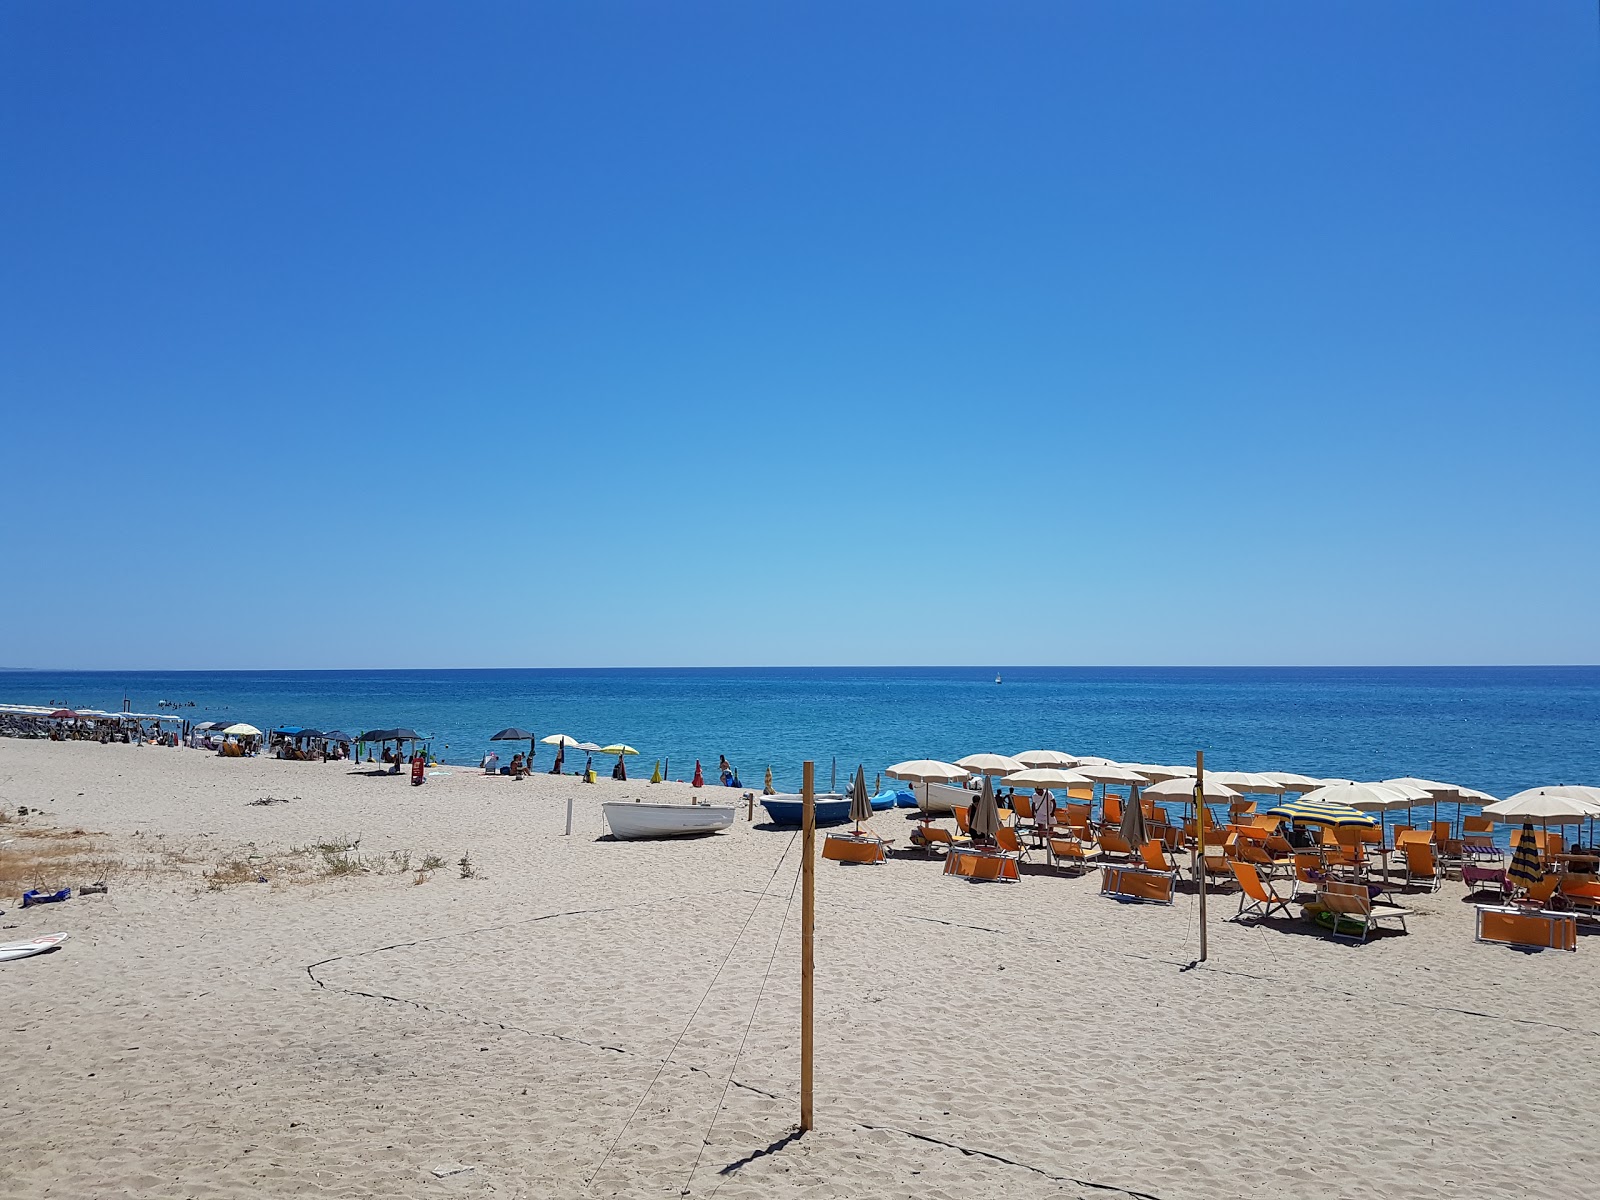 Foto de Playa Villaggio Carrao - lugar popular entre los conocedores del relax